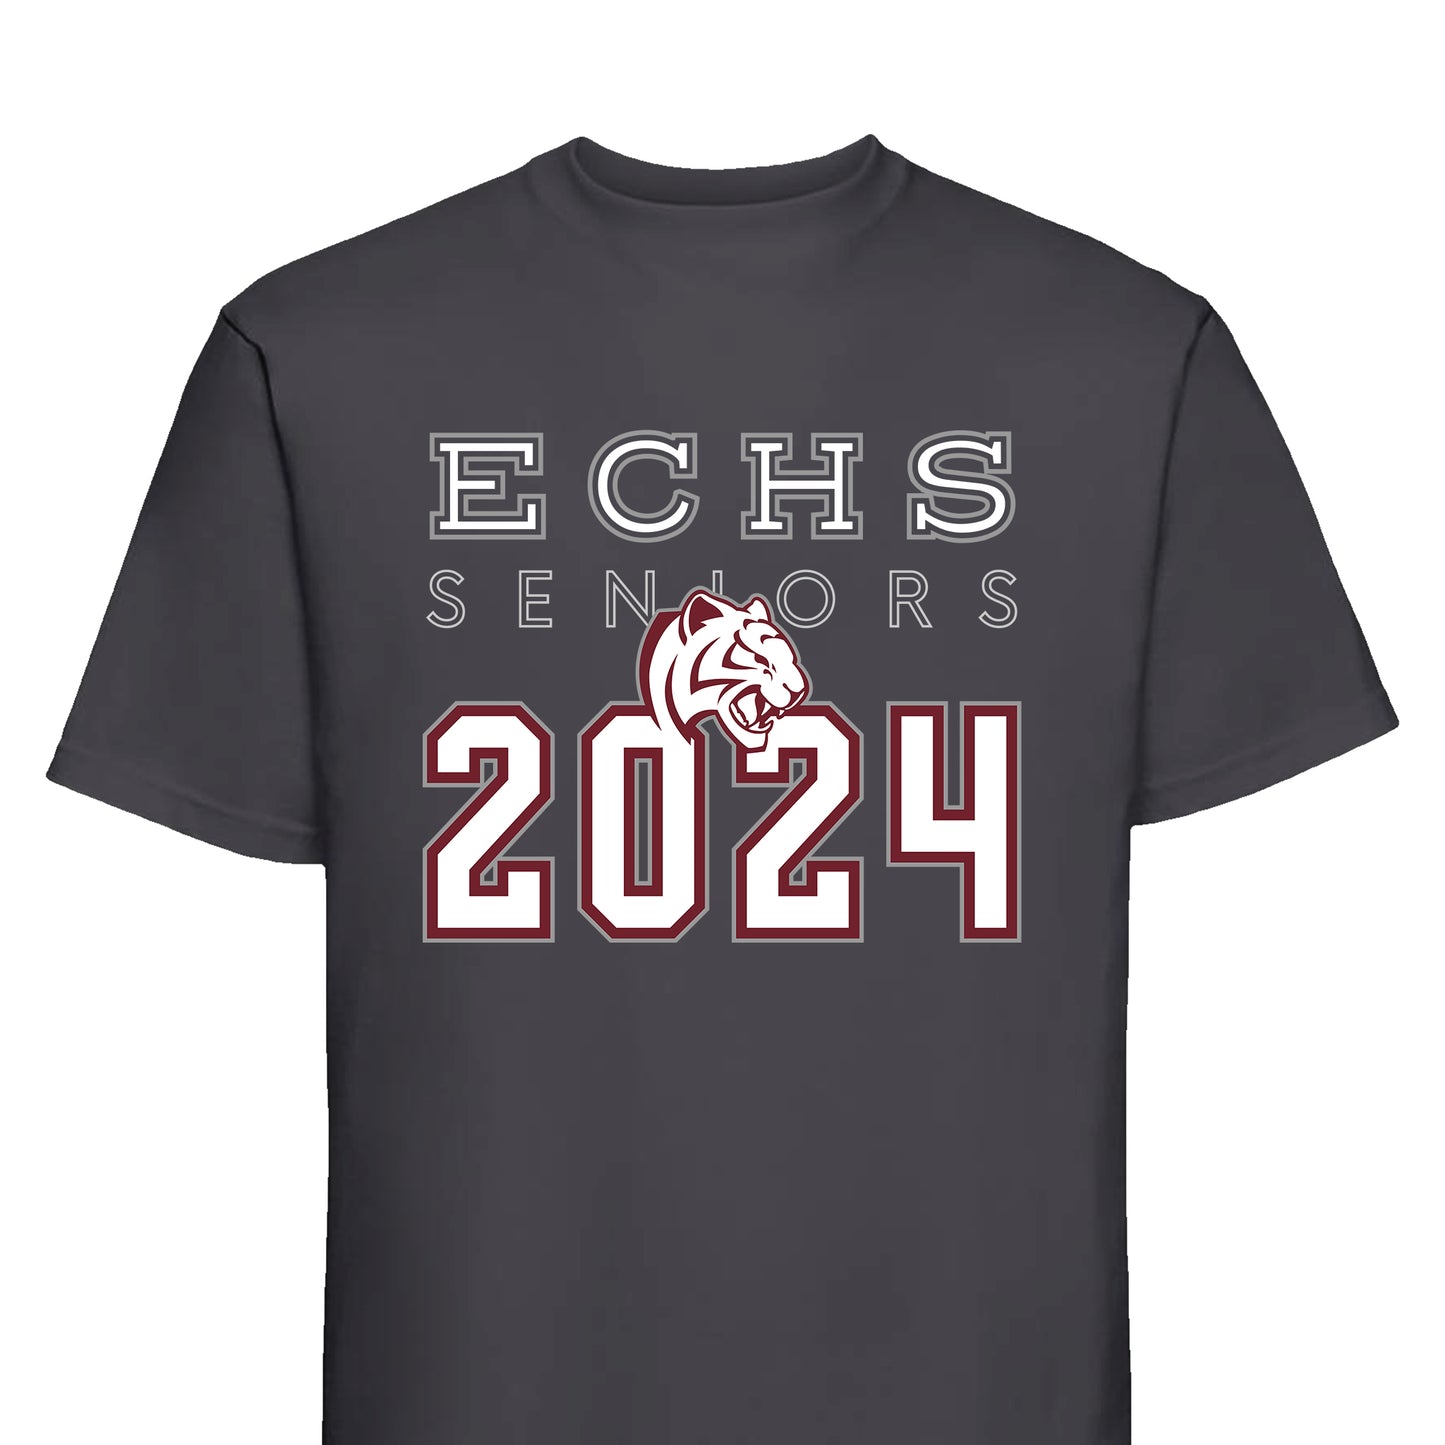 ECHS "Class of 2024" Graphic T-Shirt